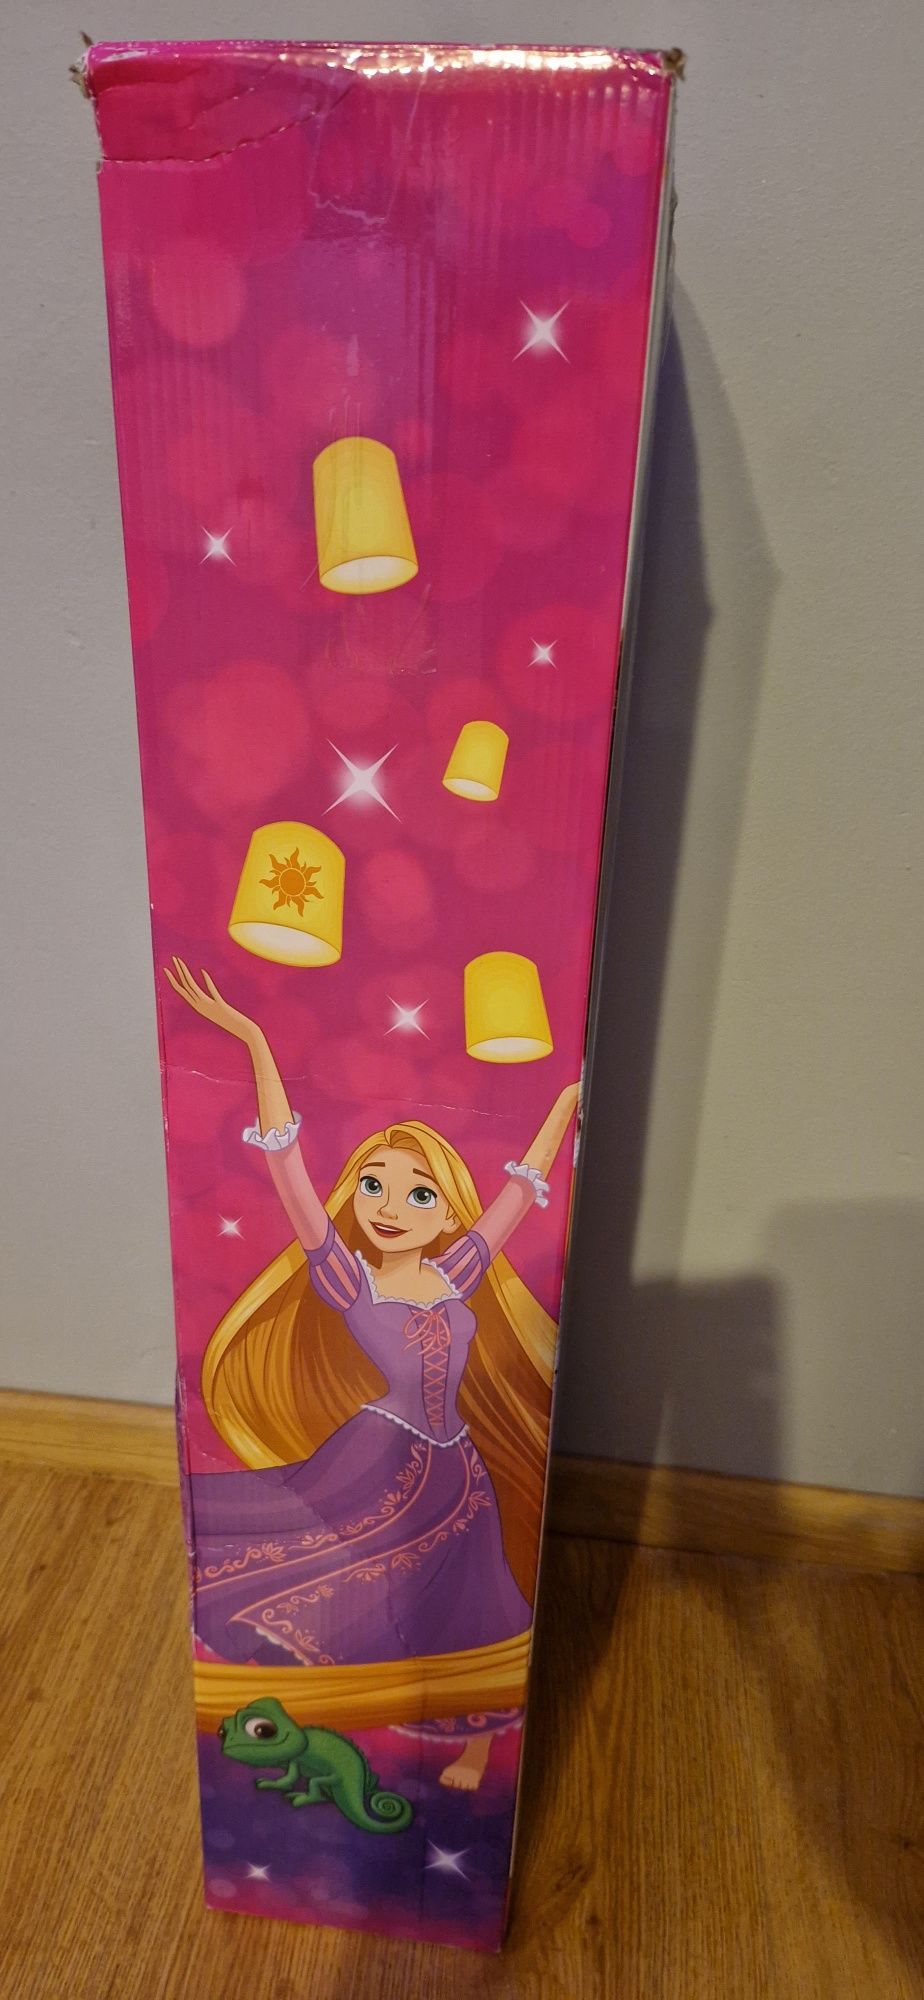 Duża lalka Roszpunka,Rapunzel - 80cm,Disney Zaplątani